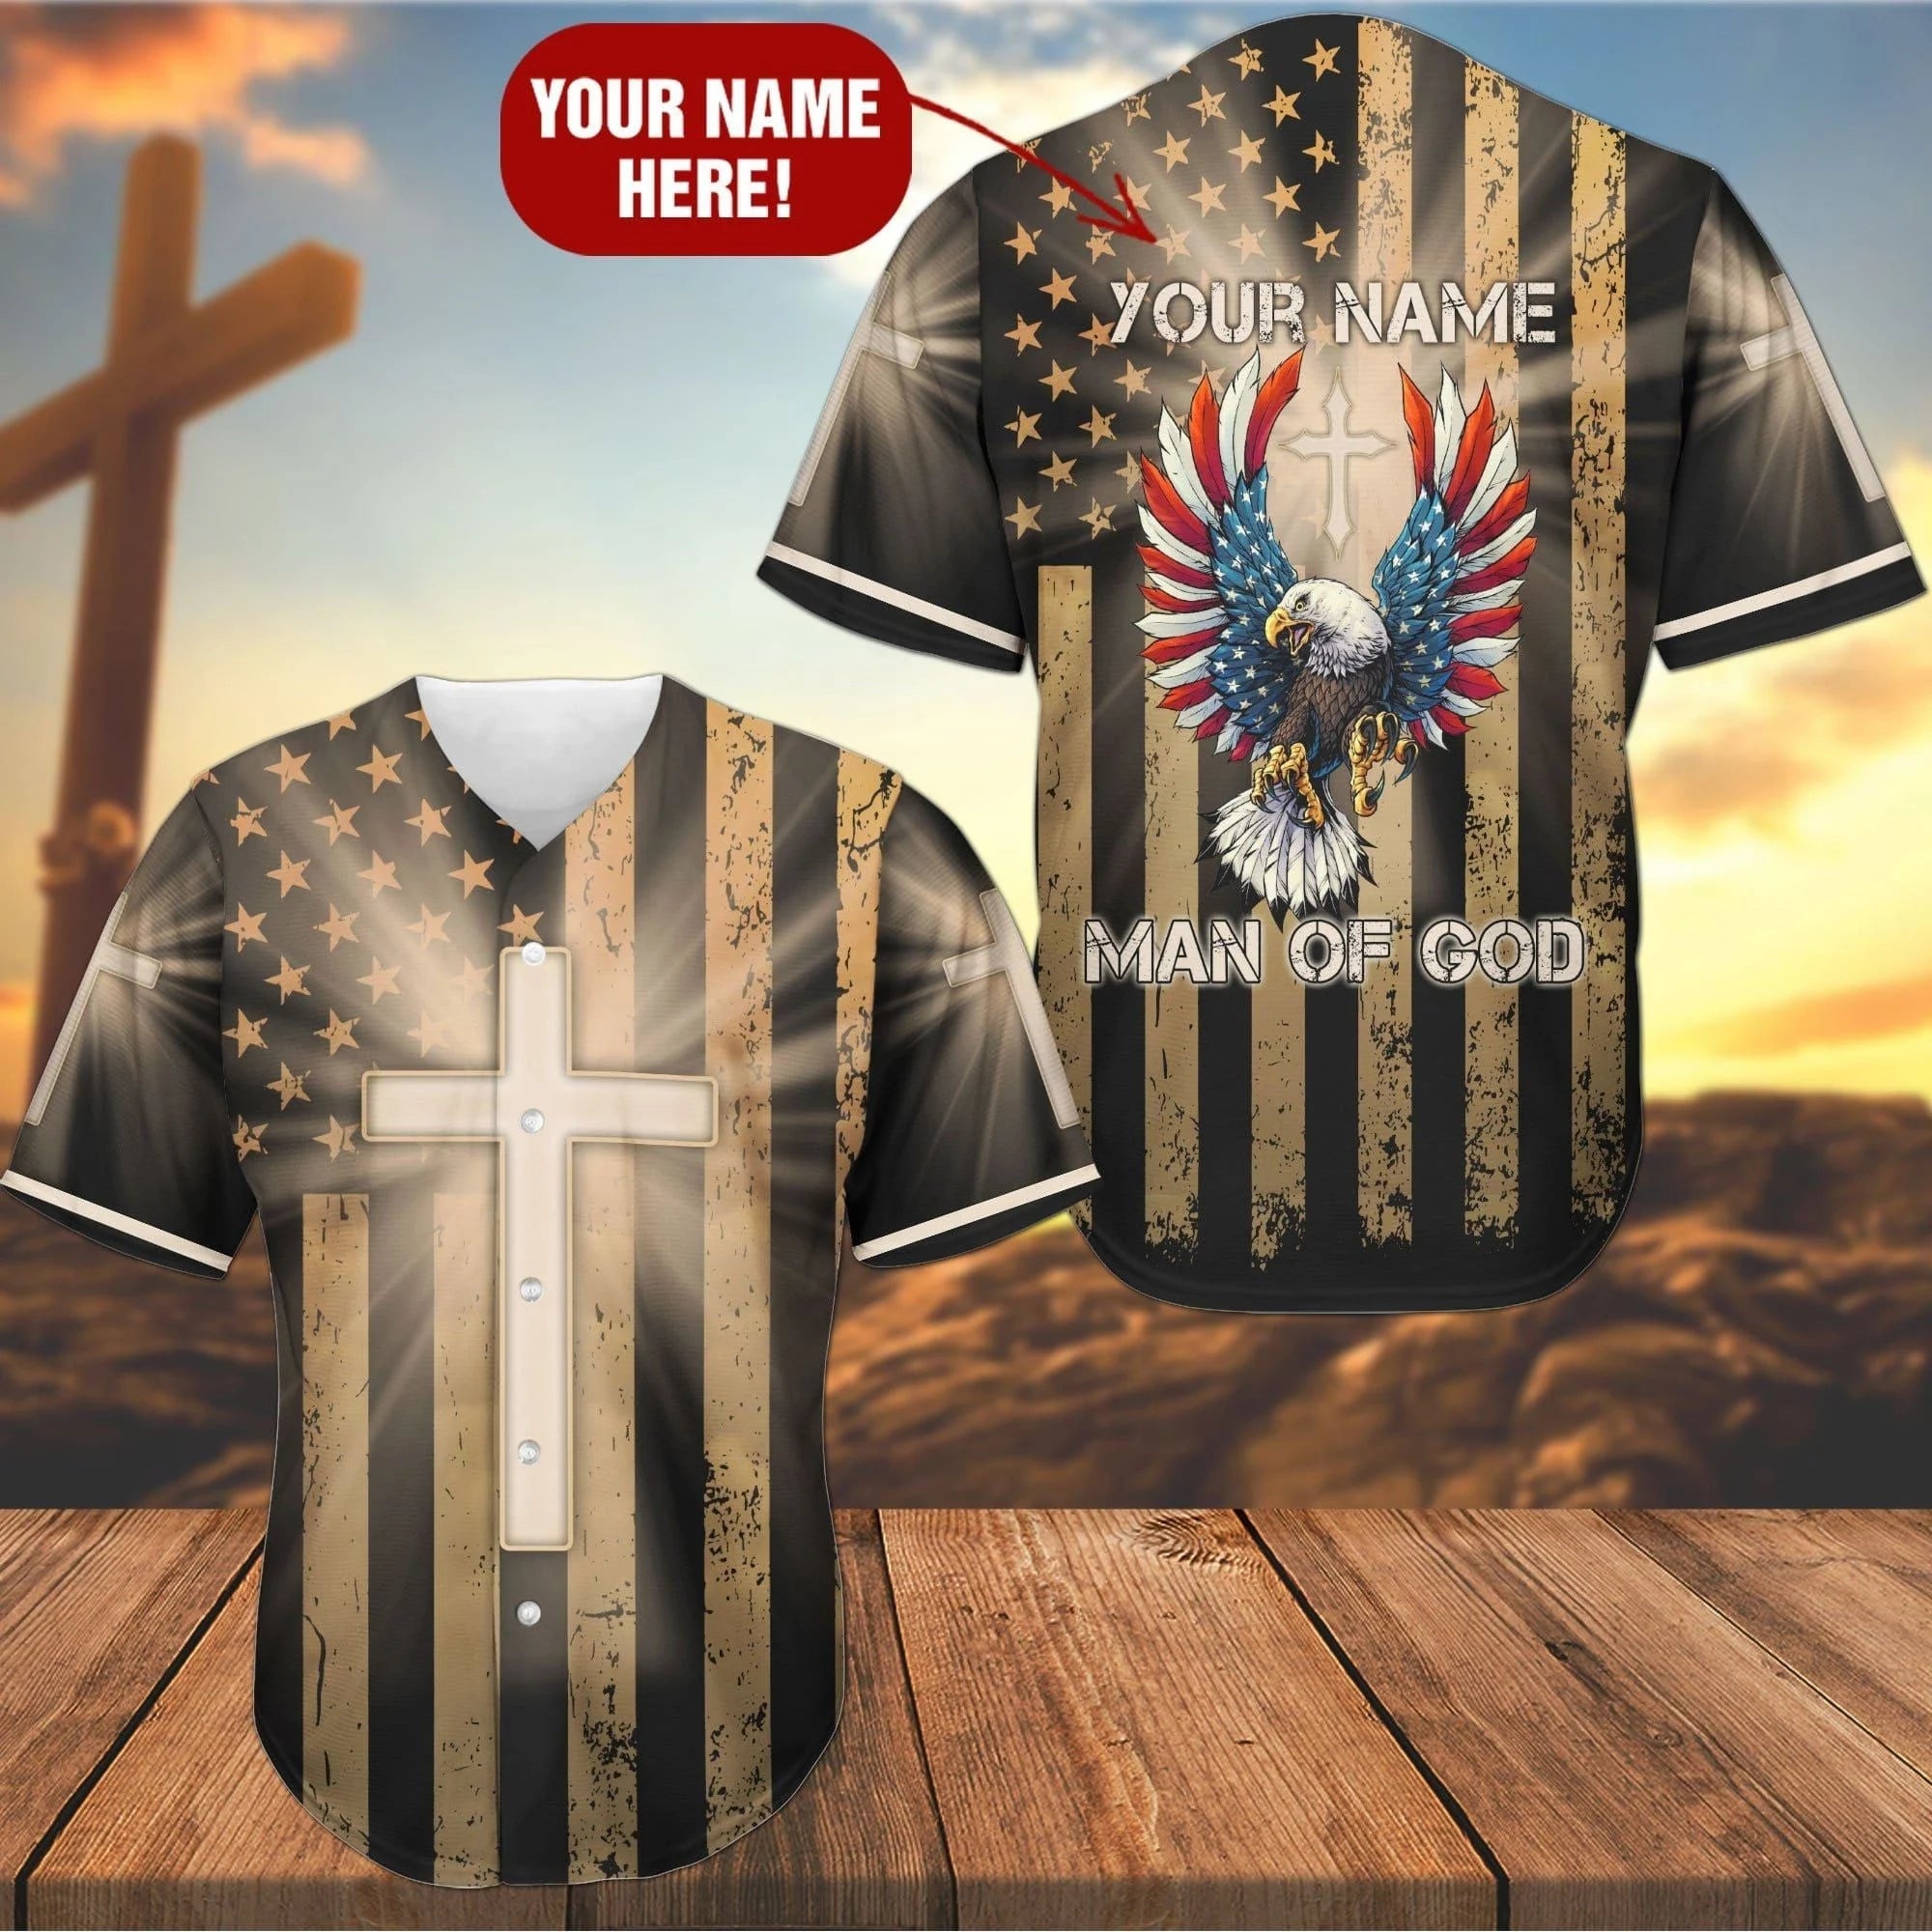 Personalized Jesus Baseball Jersey - Cross America Flag Eagle Baseball Jersey - Gift For Christians - Man Of God Custom Baseball Jersey For Men Women